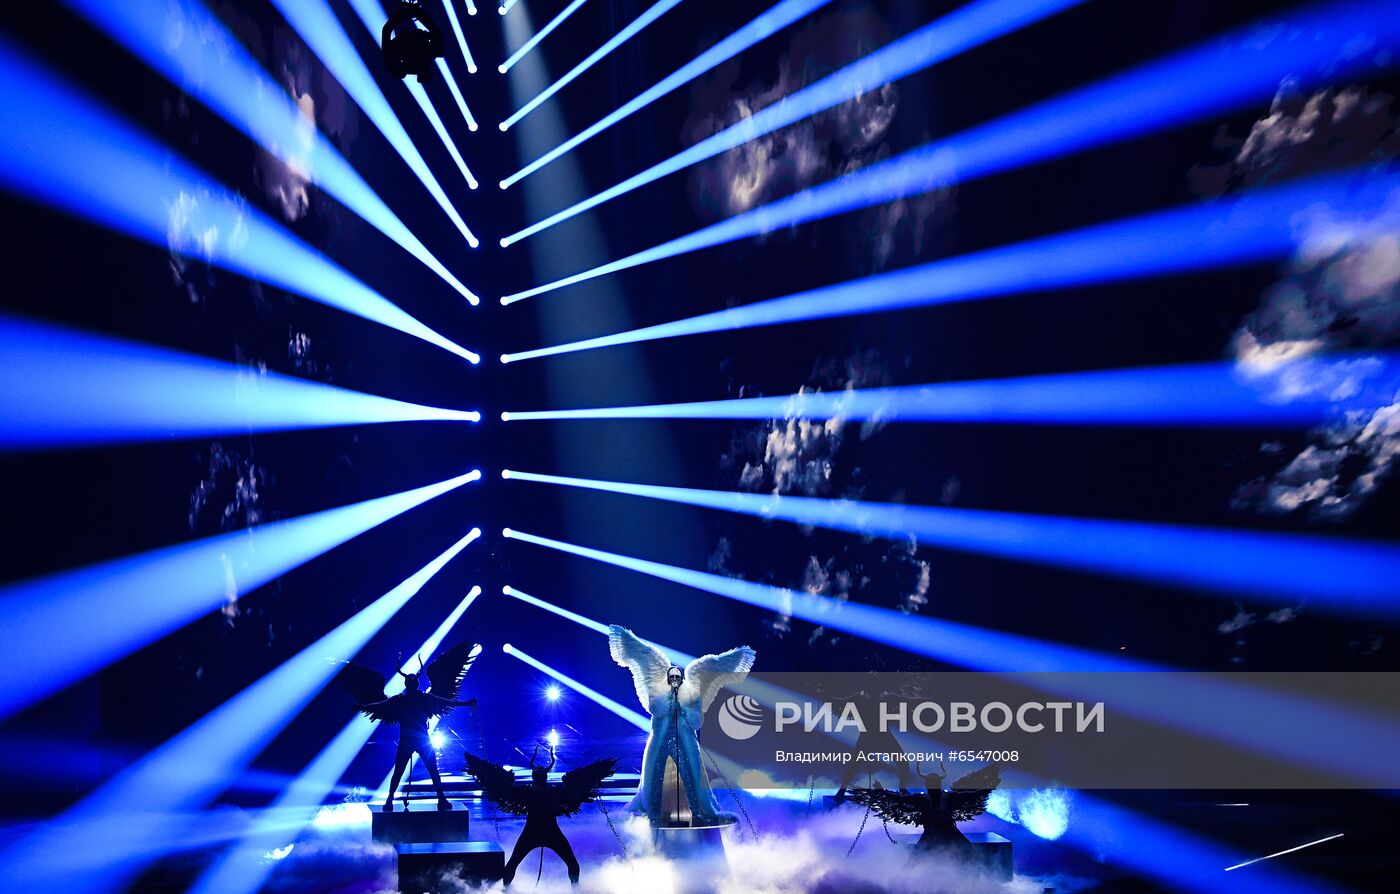 Репетиция первого полуфинала конкурса "Евровидение-2021"